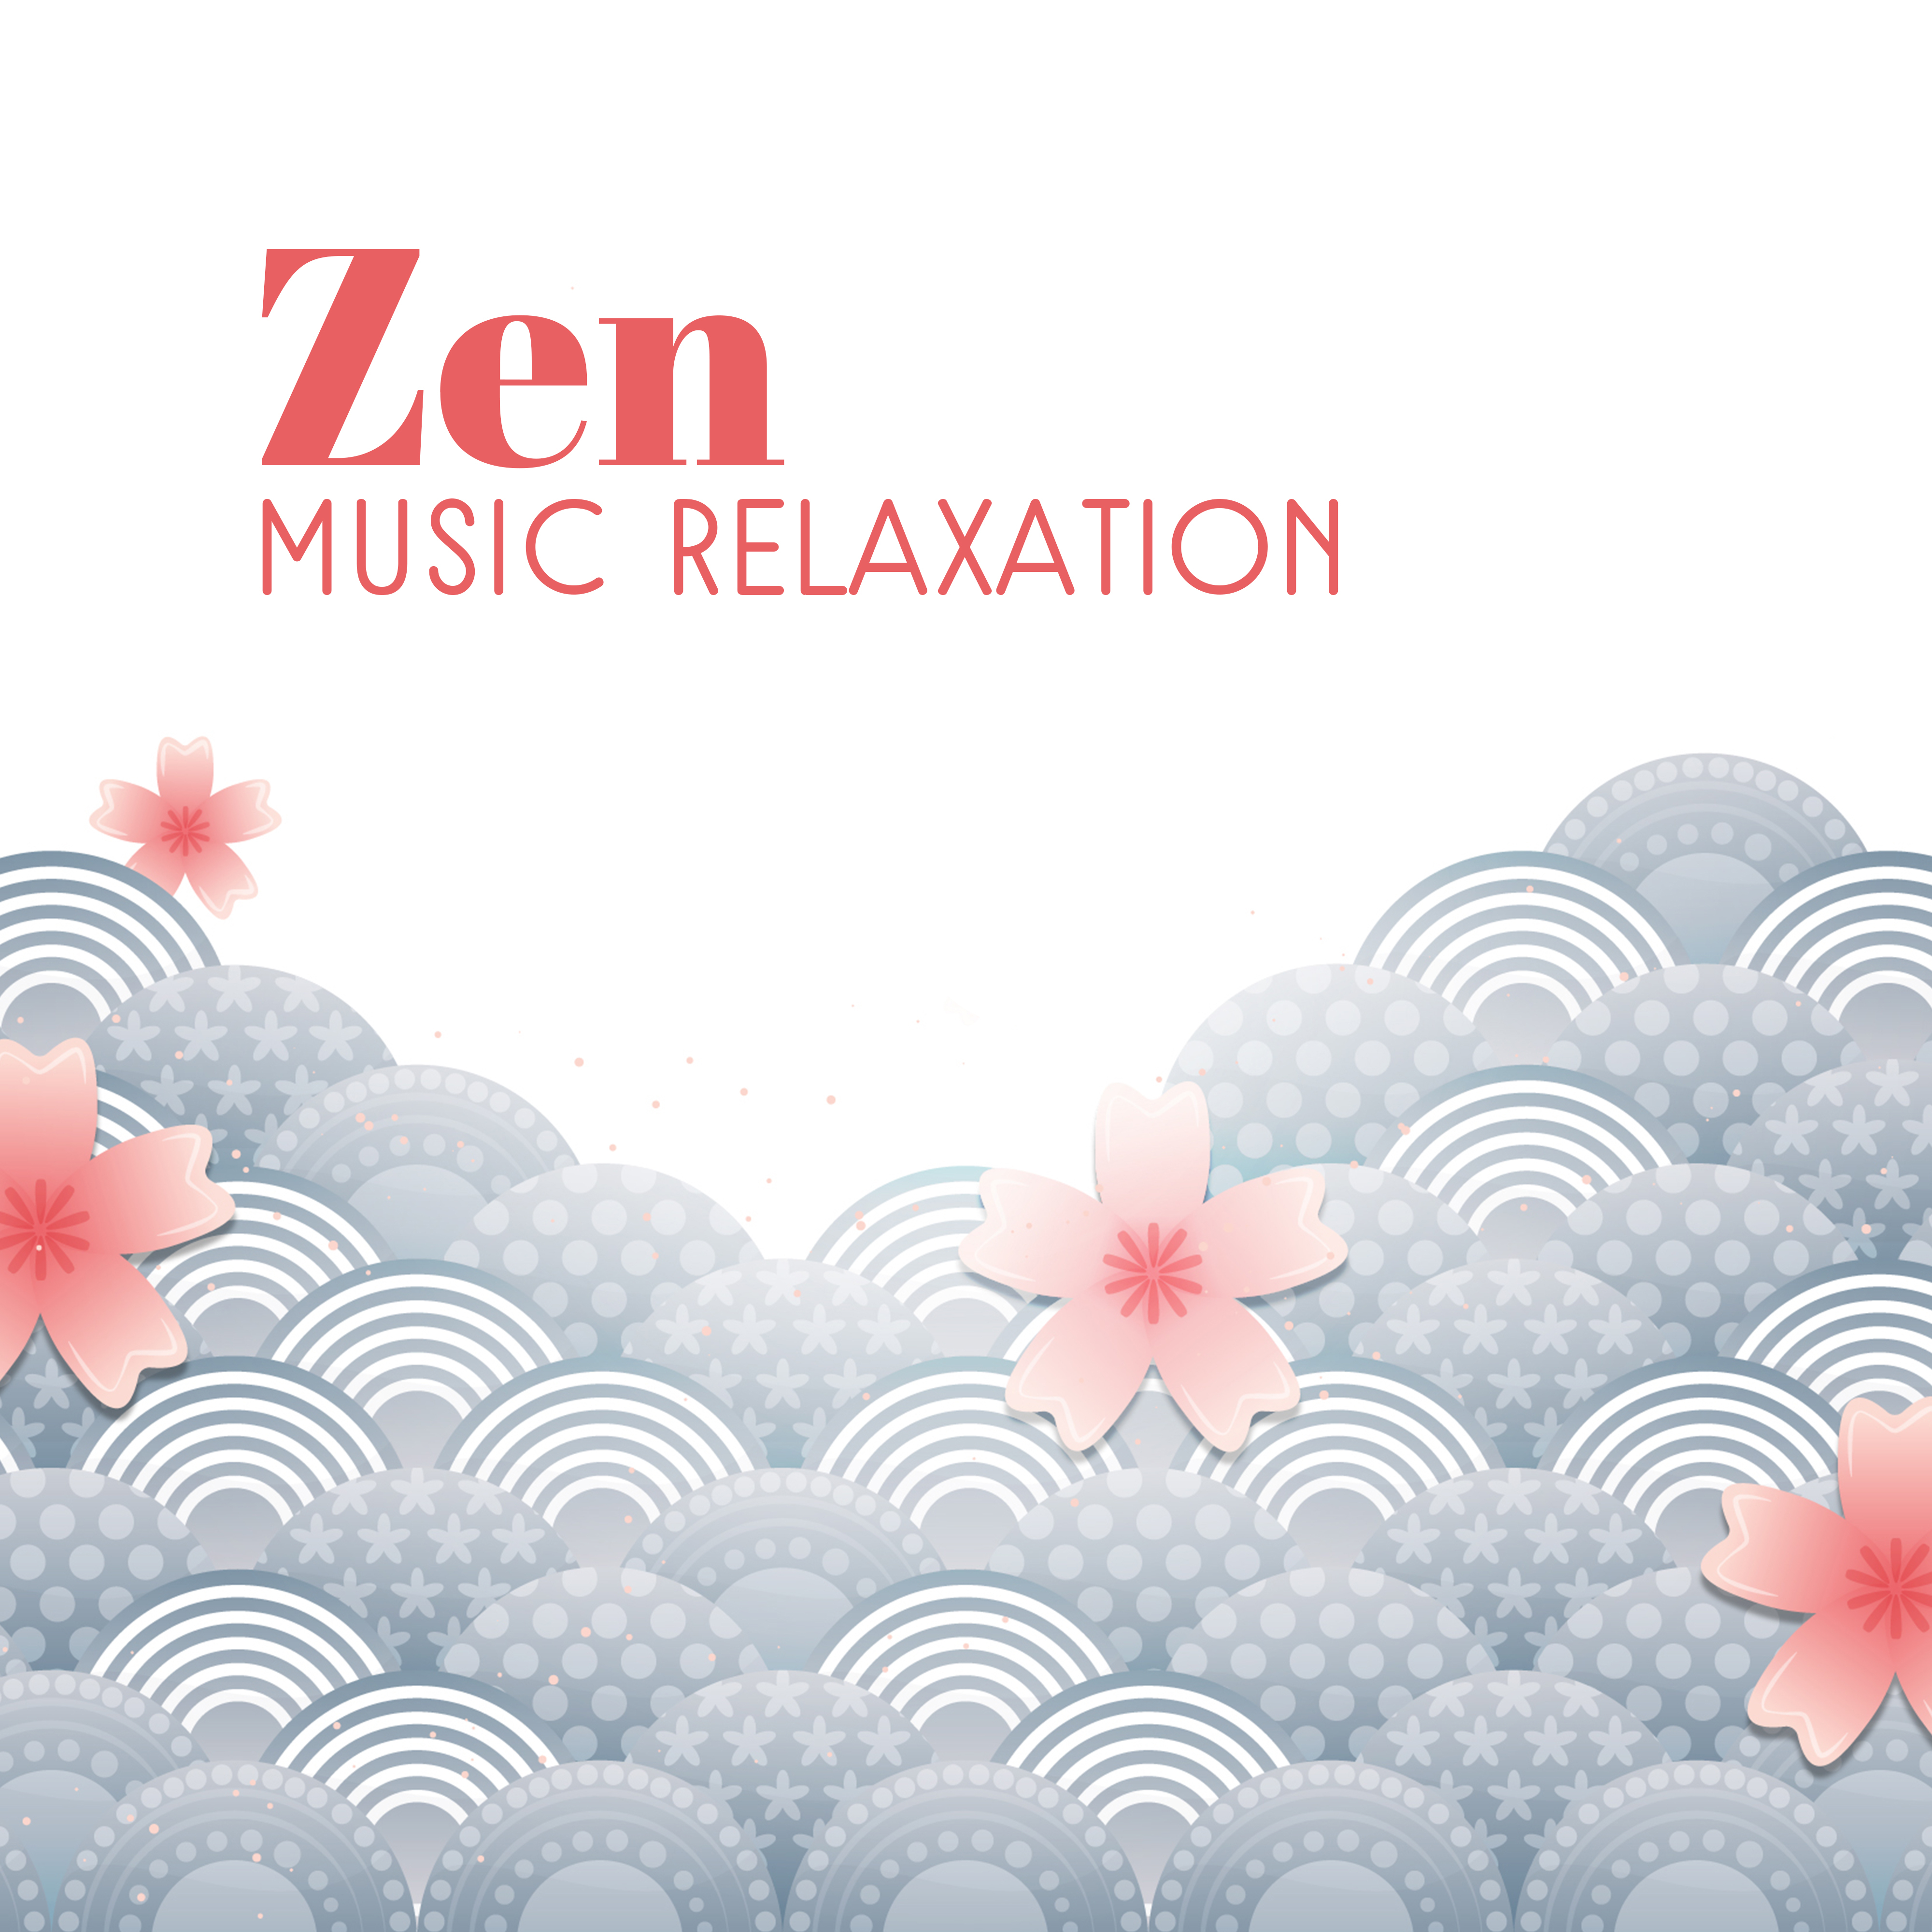 Zen Music Relaxation